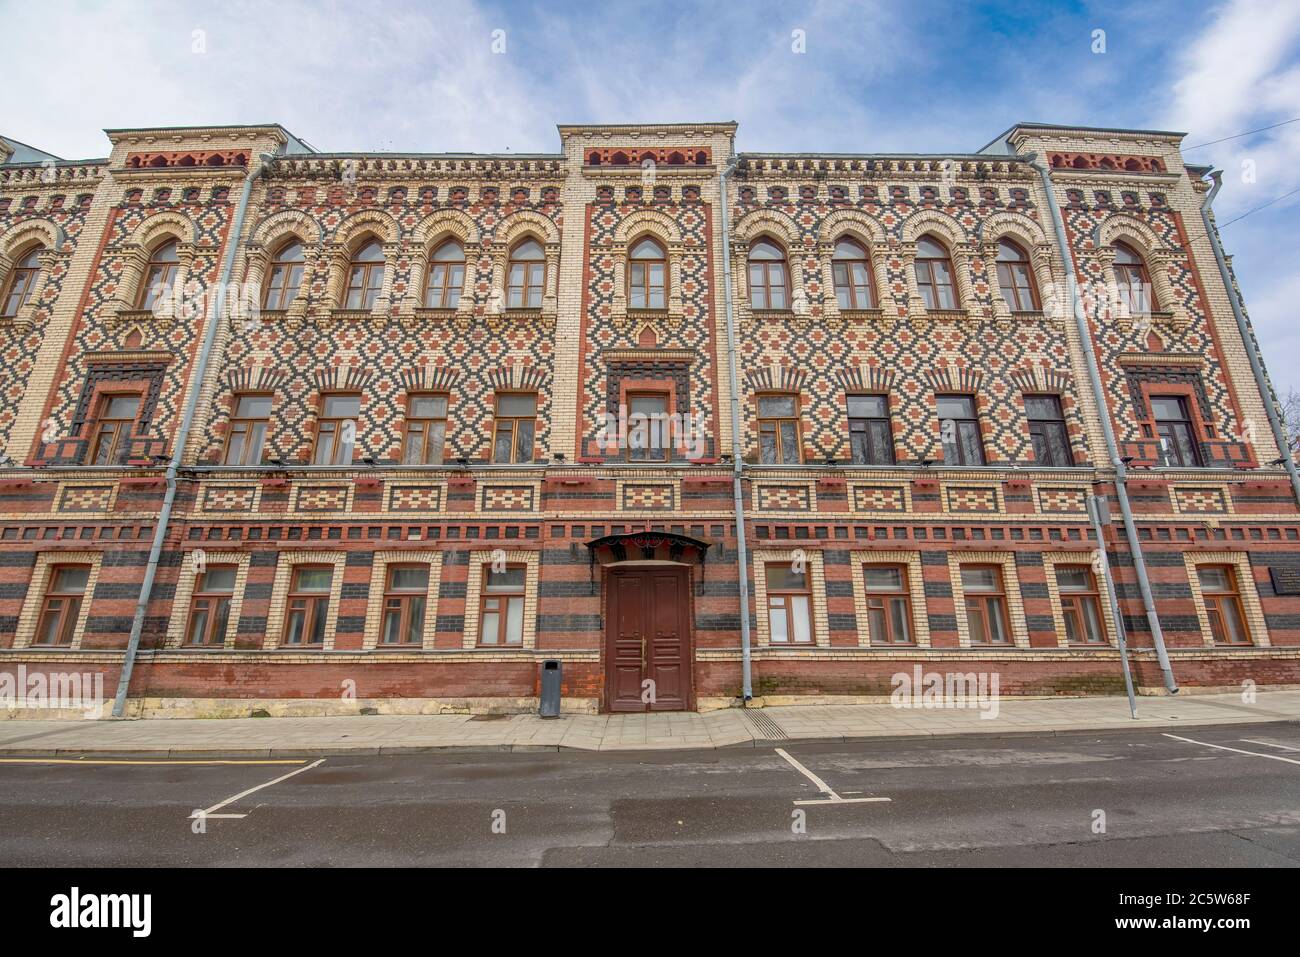 Una facciata dell'edificio in classico stile neo-barocco. Una vecchia casa aristocratica a Mosca, in Russia Foto Stock